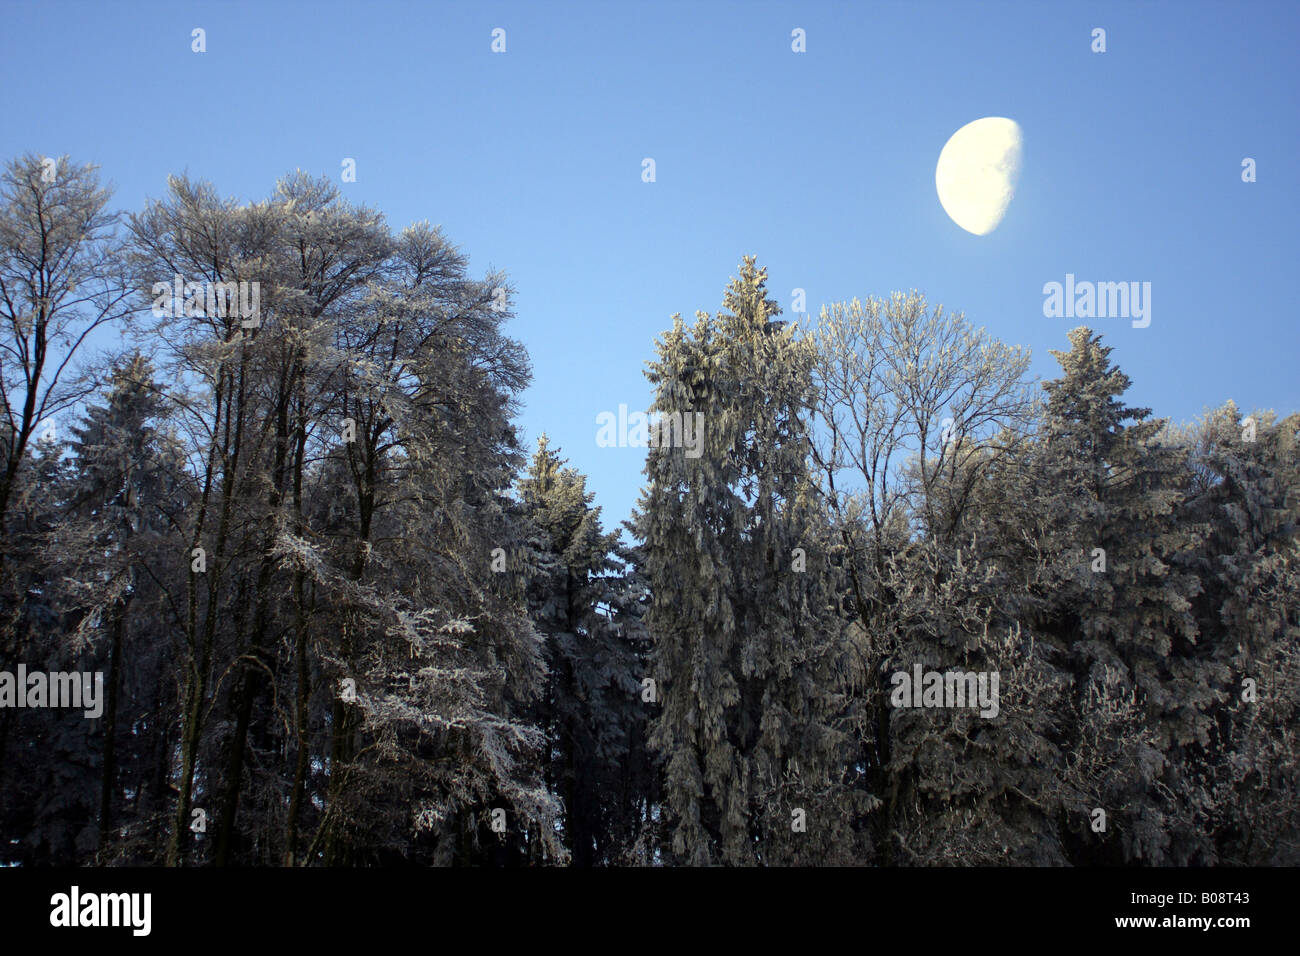 Wald im Winter mit Raureif mit Mondlicht, Schweiz Stockfoto